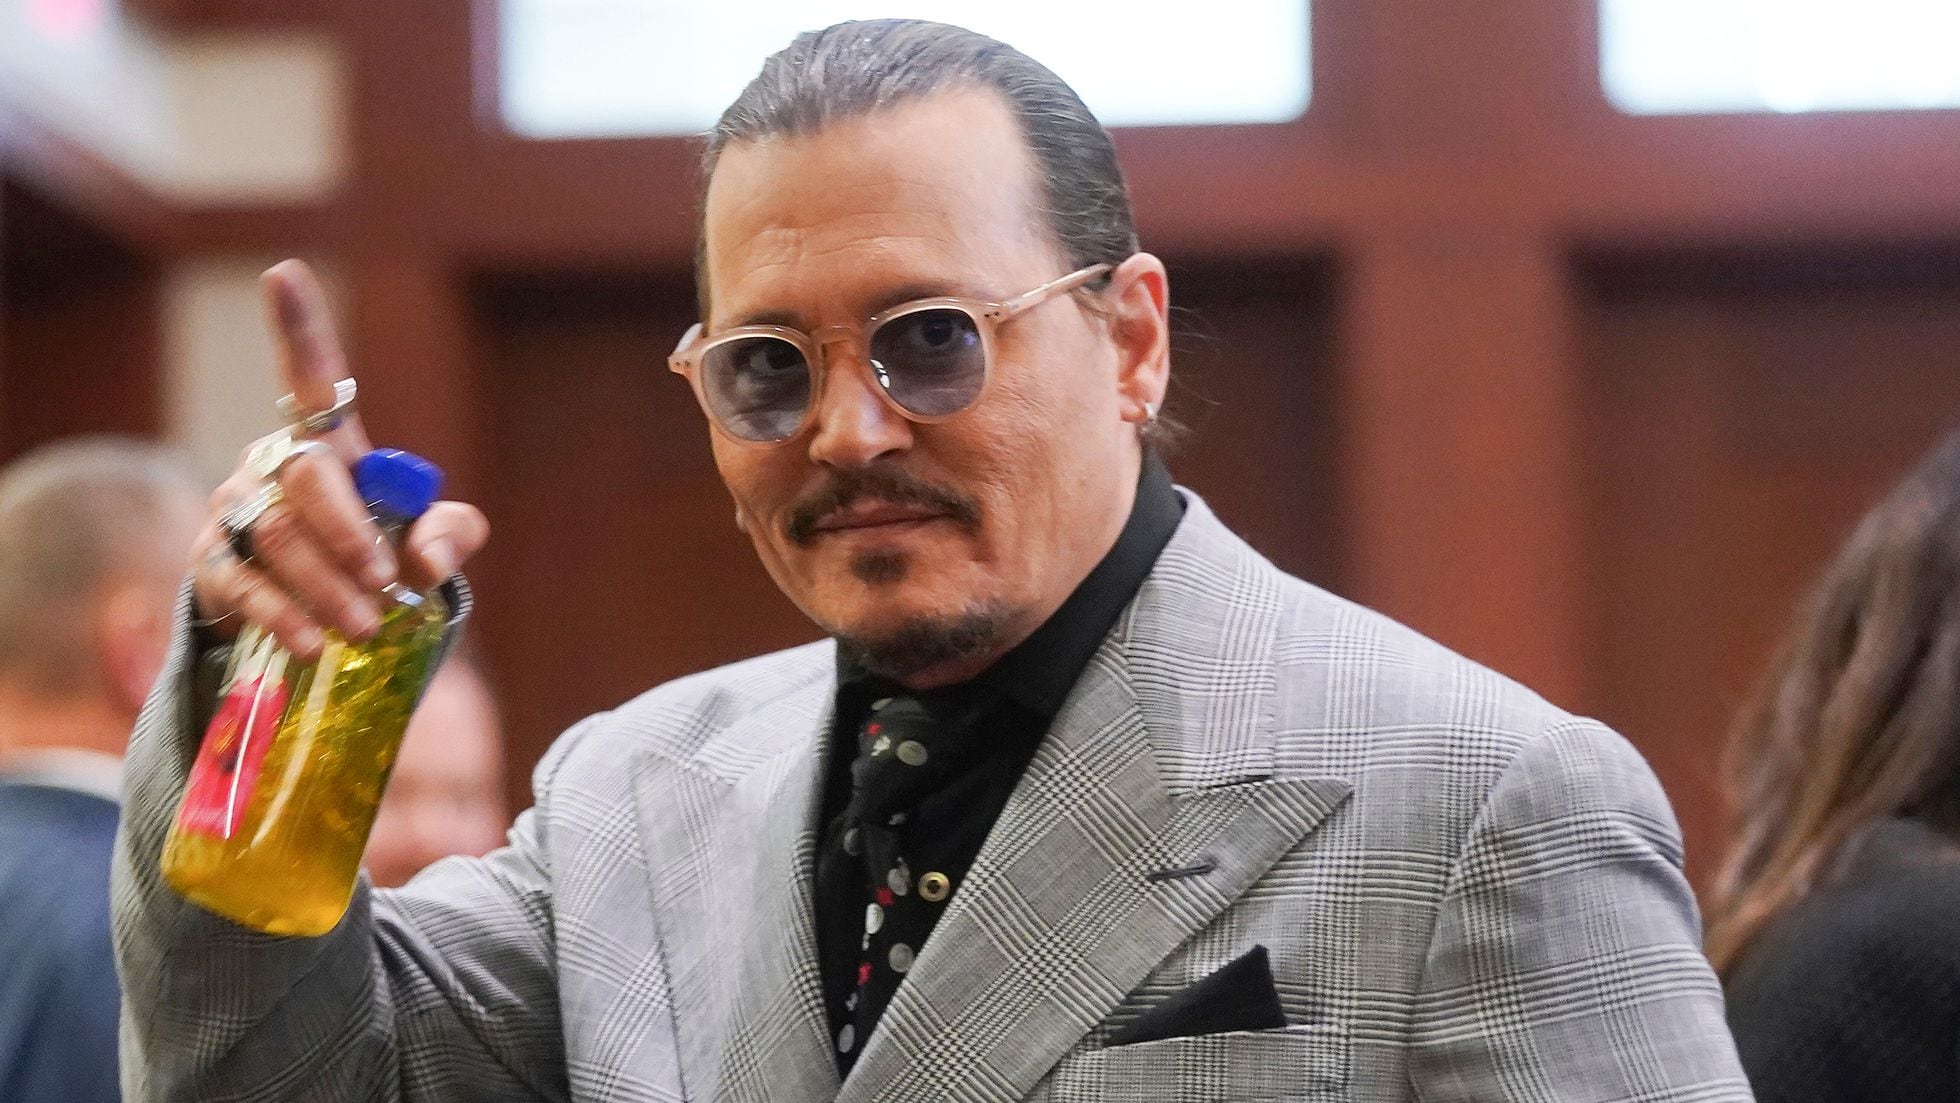 Los fantasmas del pasado declaran contra Johnny Depp en el juicio |  Sociedad | EL PAÍS